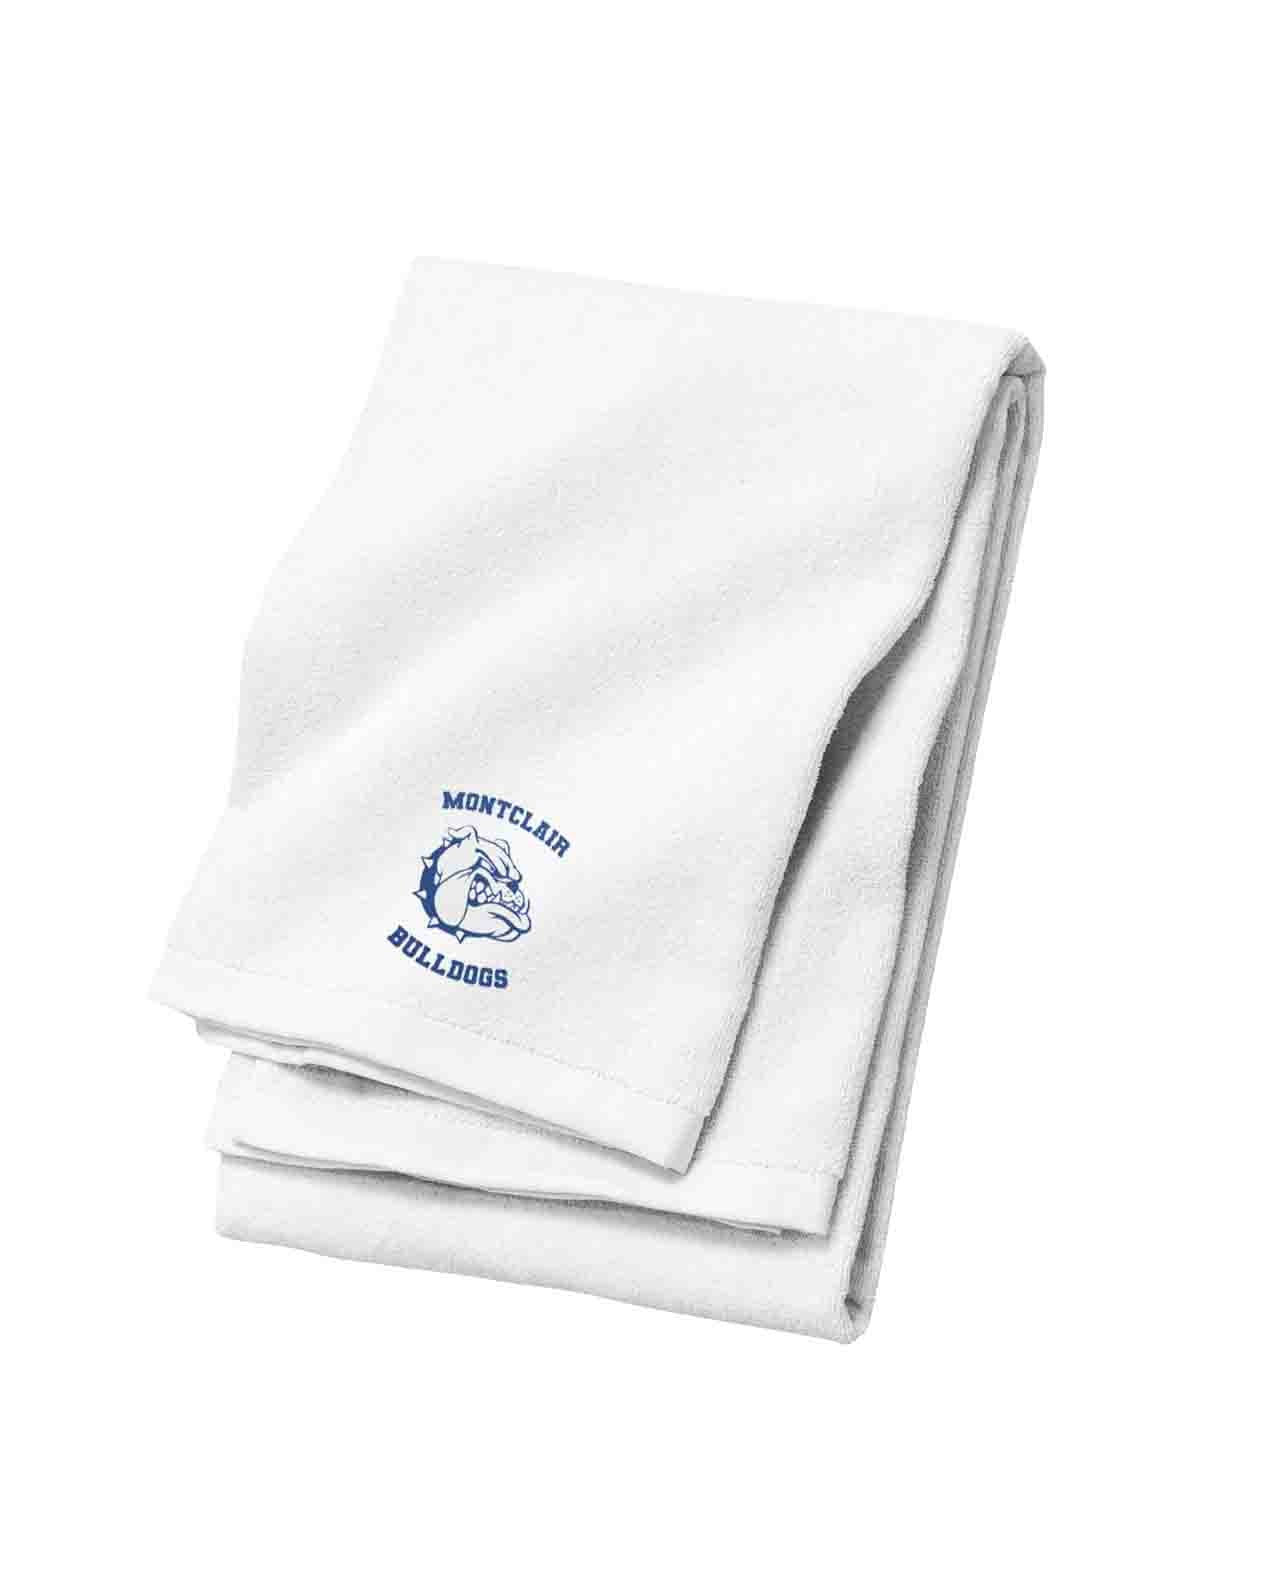 MHS Bulldogs Beach Towel